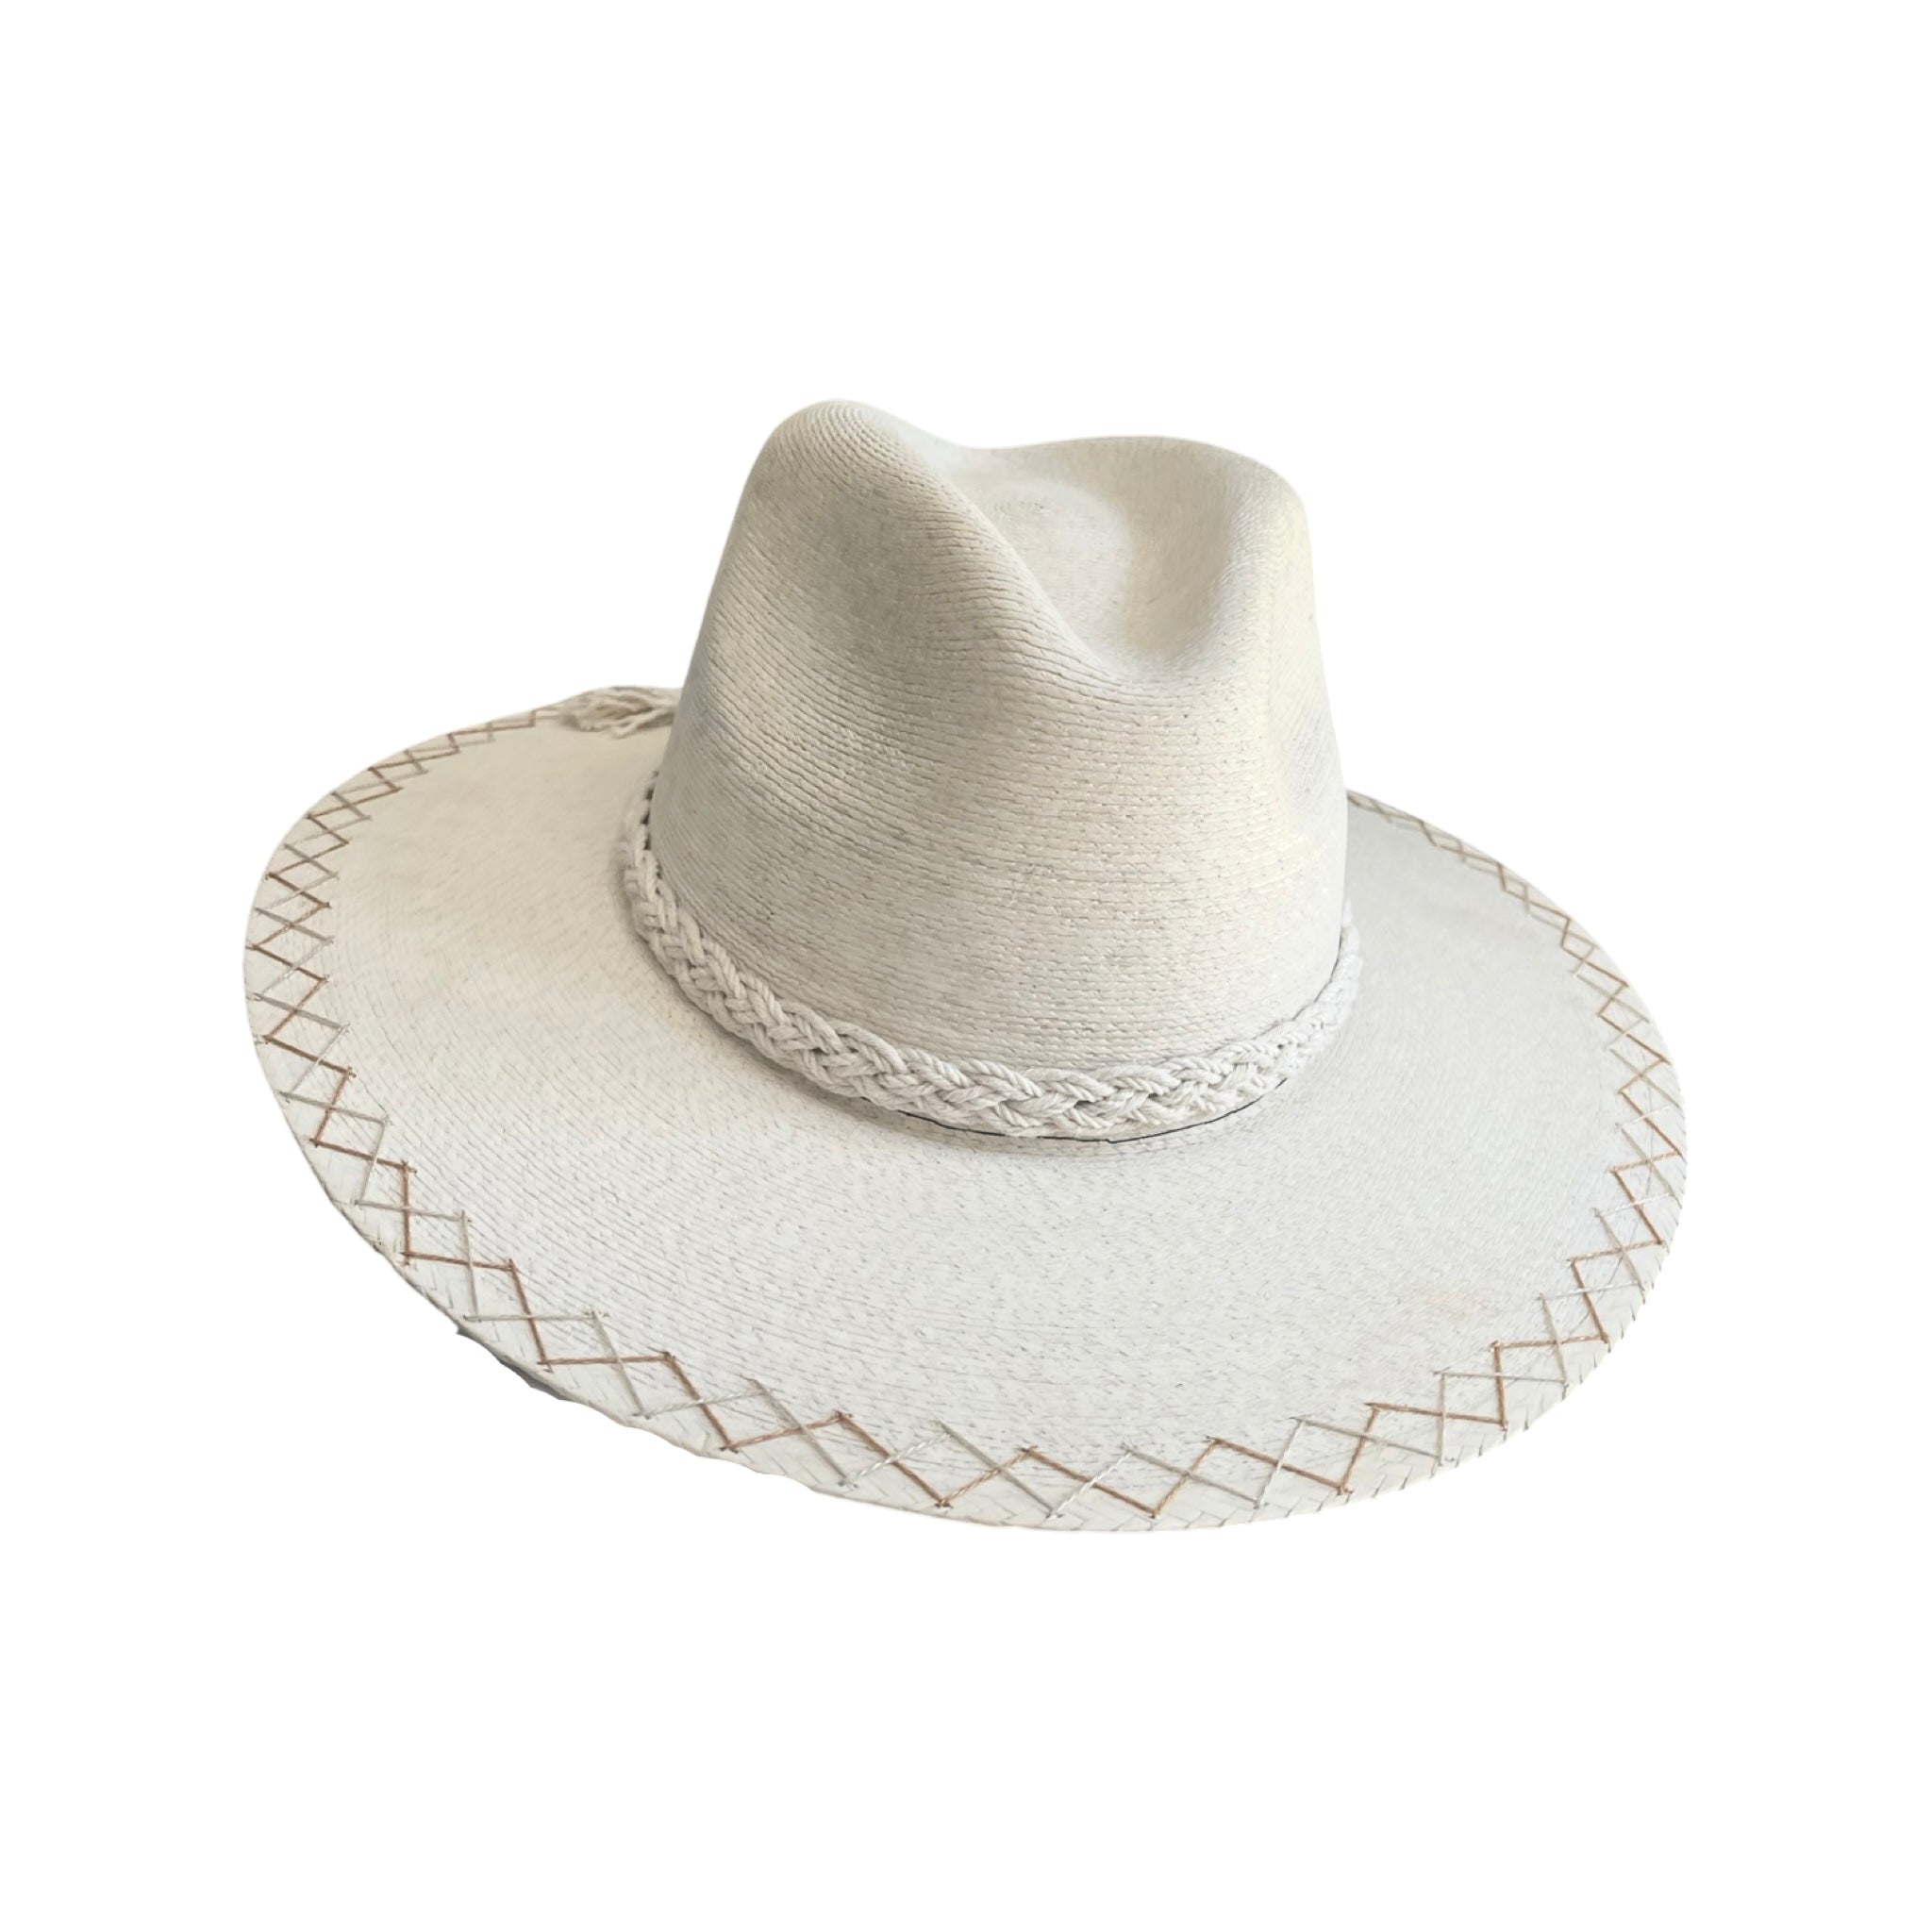 Exclusive La Palma Hat by Corazon Playero - Preorder